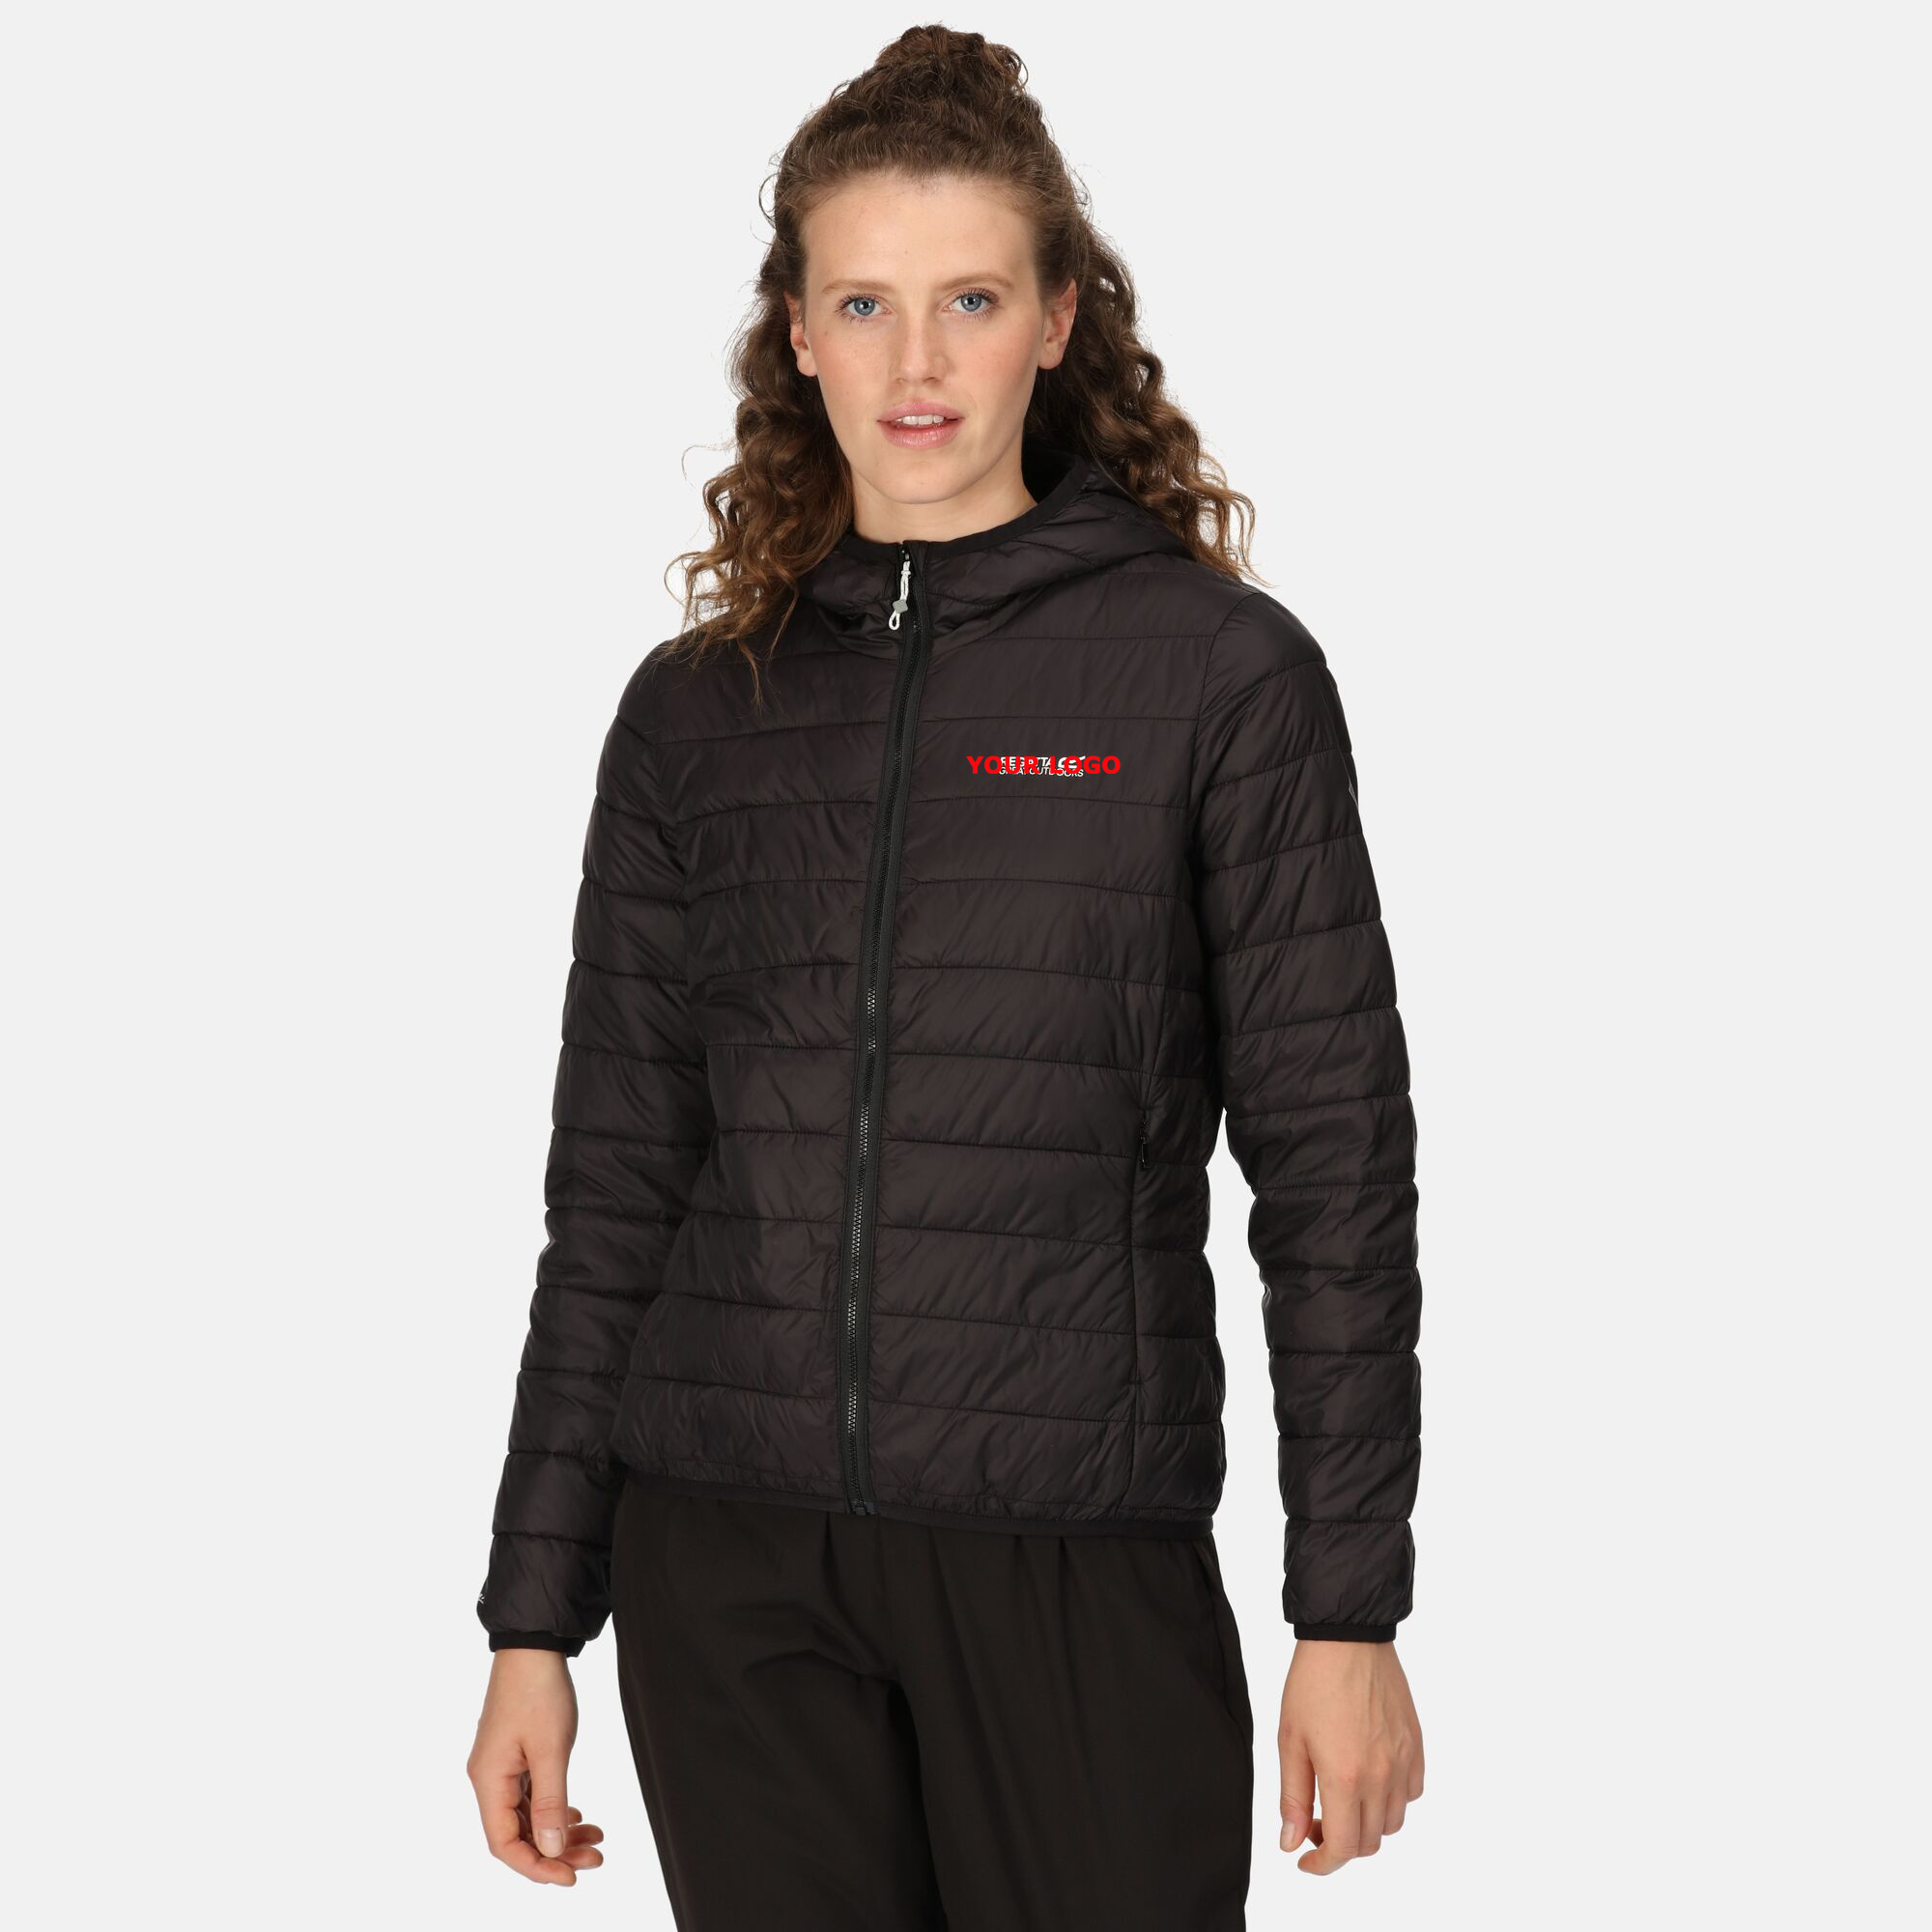 Xhaketë e lehtë për femra me kapuç në natyrë |Dimër